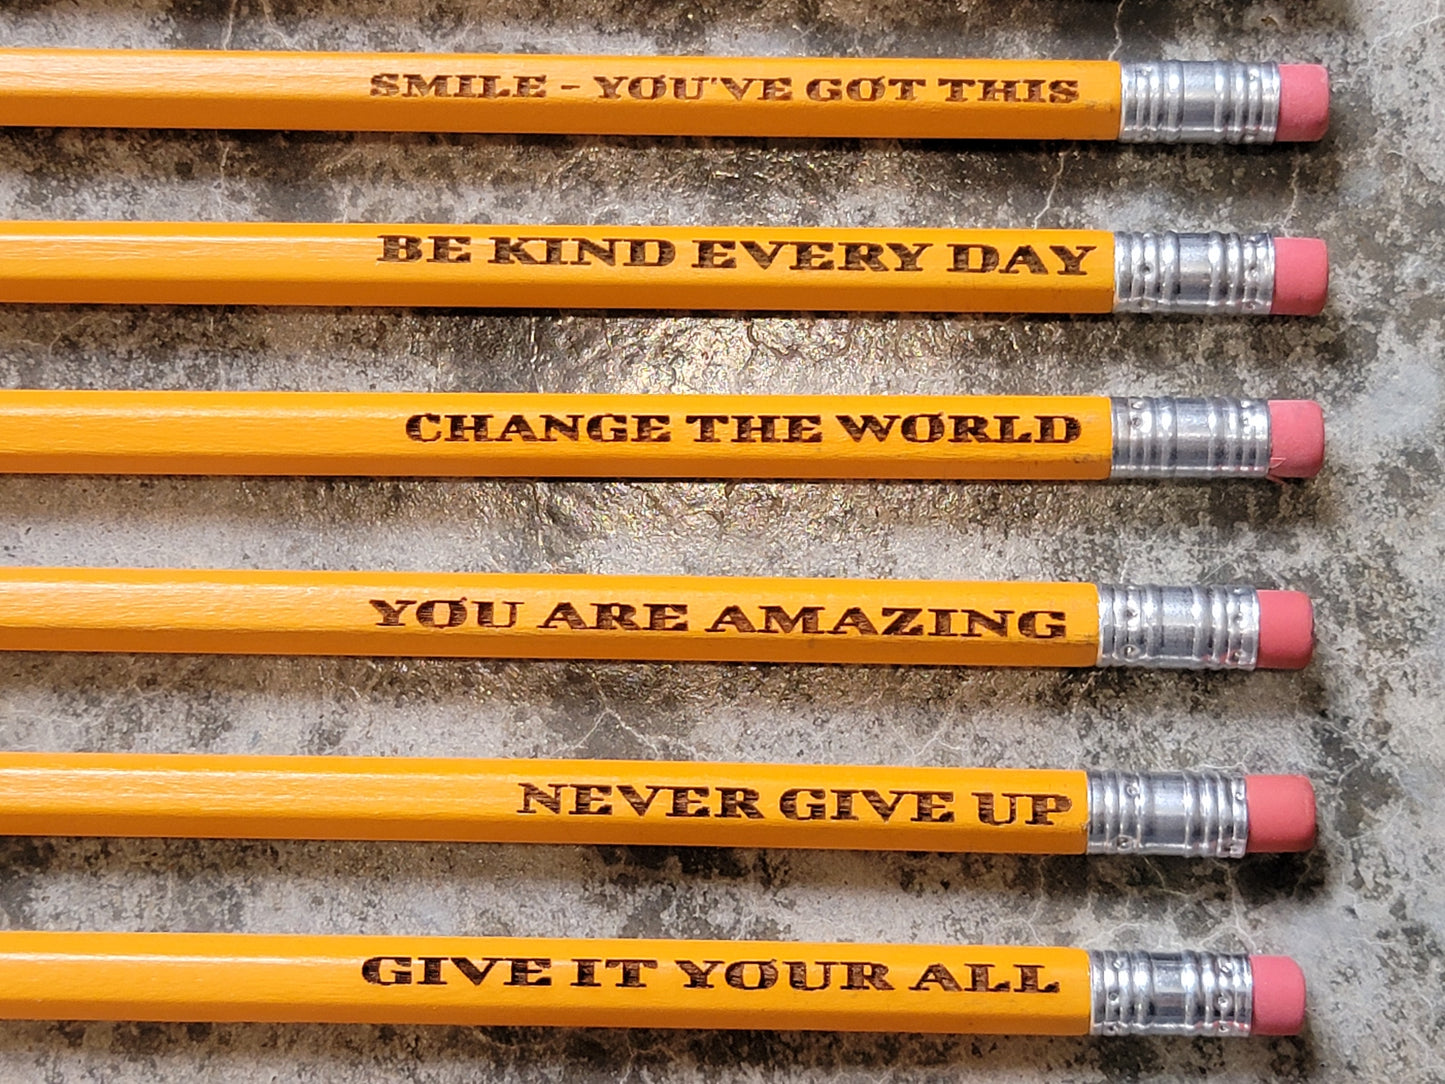 #2 Ticonderoga Engraved Pencils